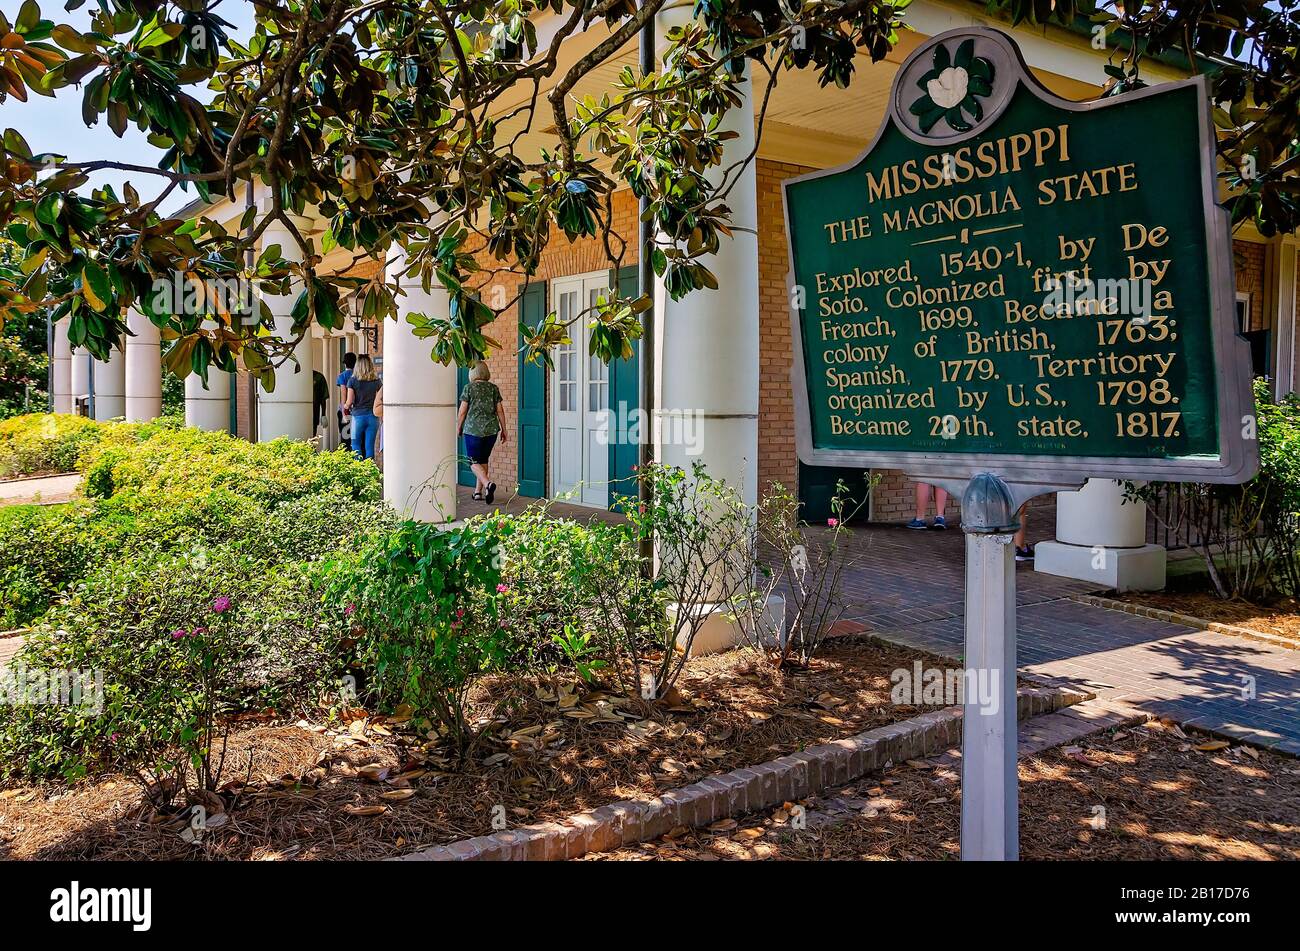 Ein historischer Marker, der unter einem magnolienbaum aufgestellt wurde, beschreibt die Geschichte von Mississippi im Warren County Welcome Center in Vicksburg, Mississippi. Stockfoto